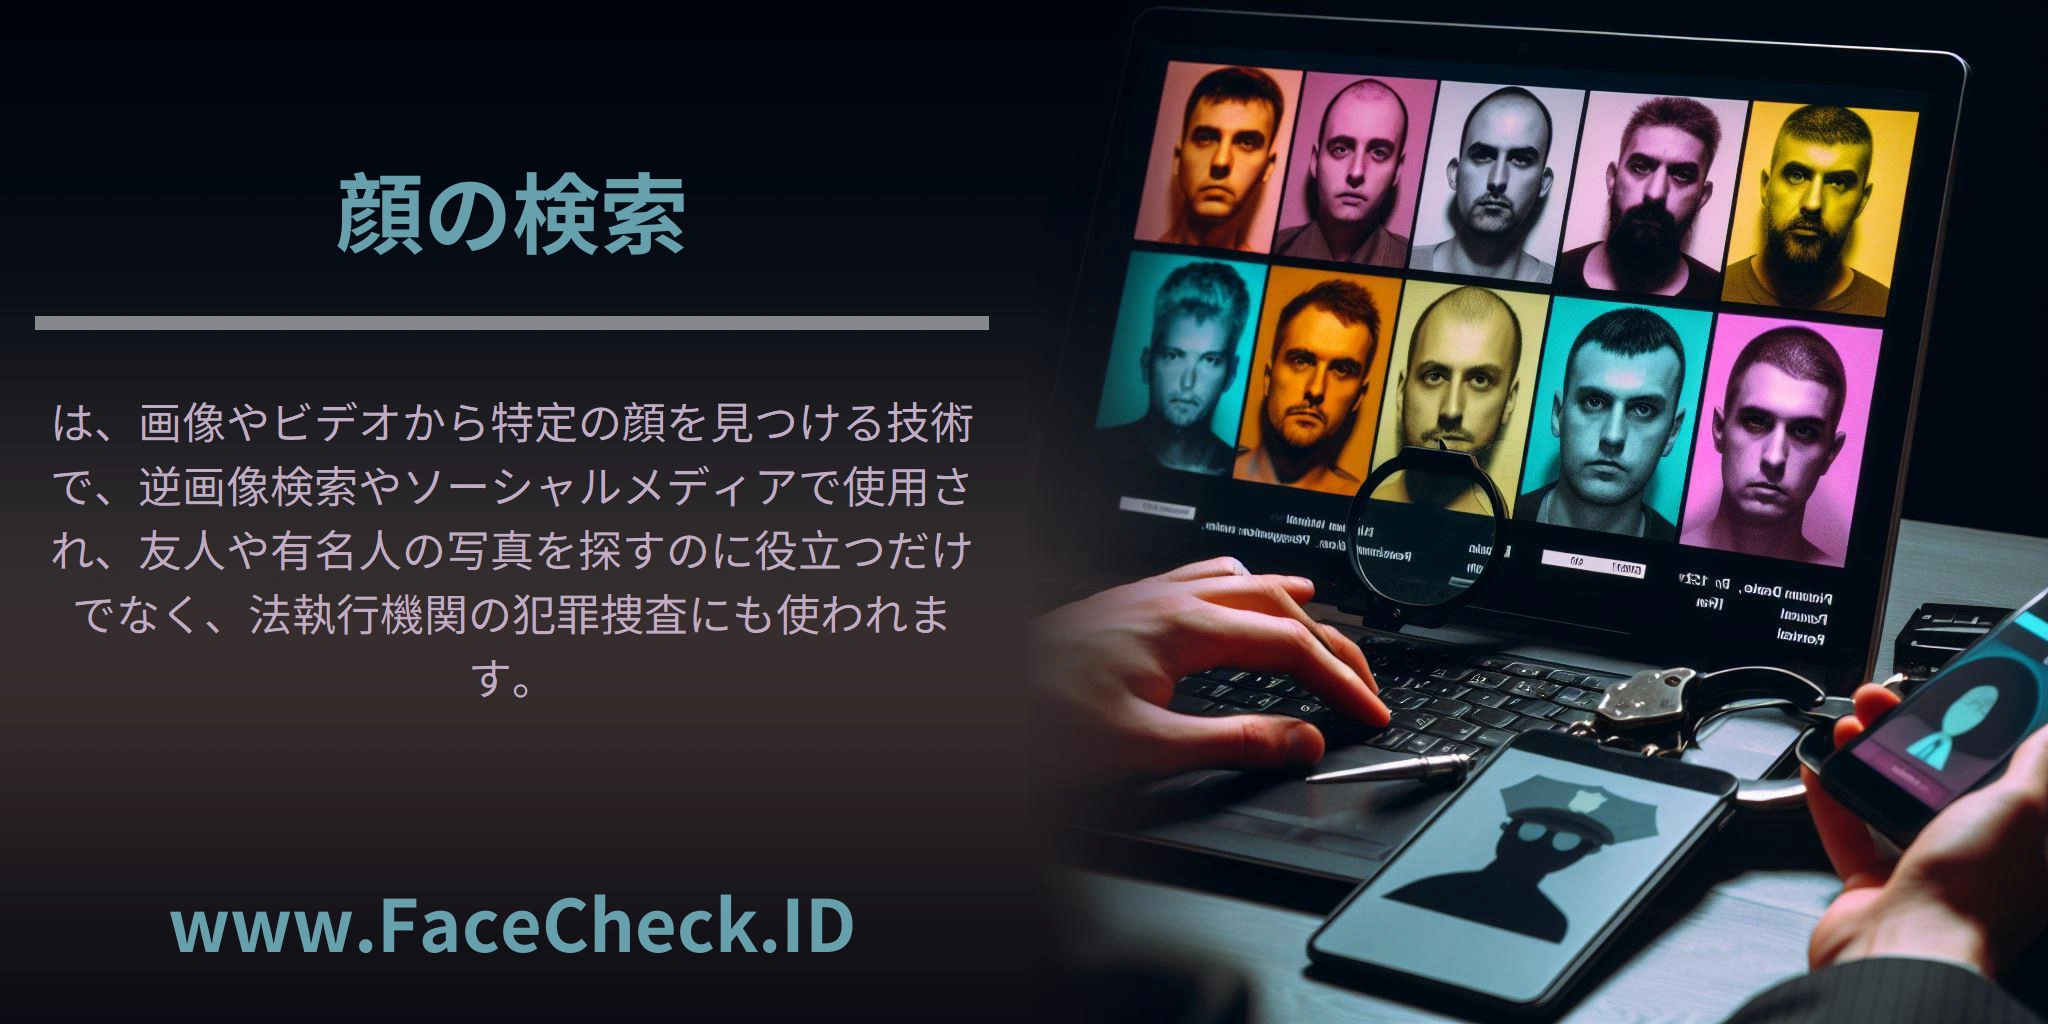 <b>顔の検索</b>は、画像やビデオから特定の顔を見つける技術で、逆画像検索やソーシャルメディアで使用され、友人や有名人の写真を探すのに役立つだけでなく、法執行機関の犯罪捜査にも使われます。